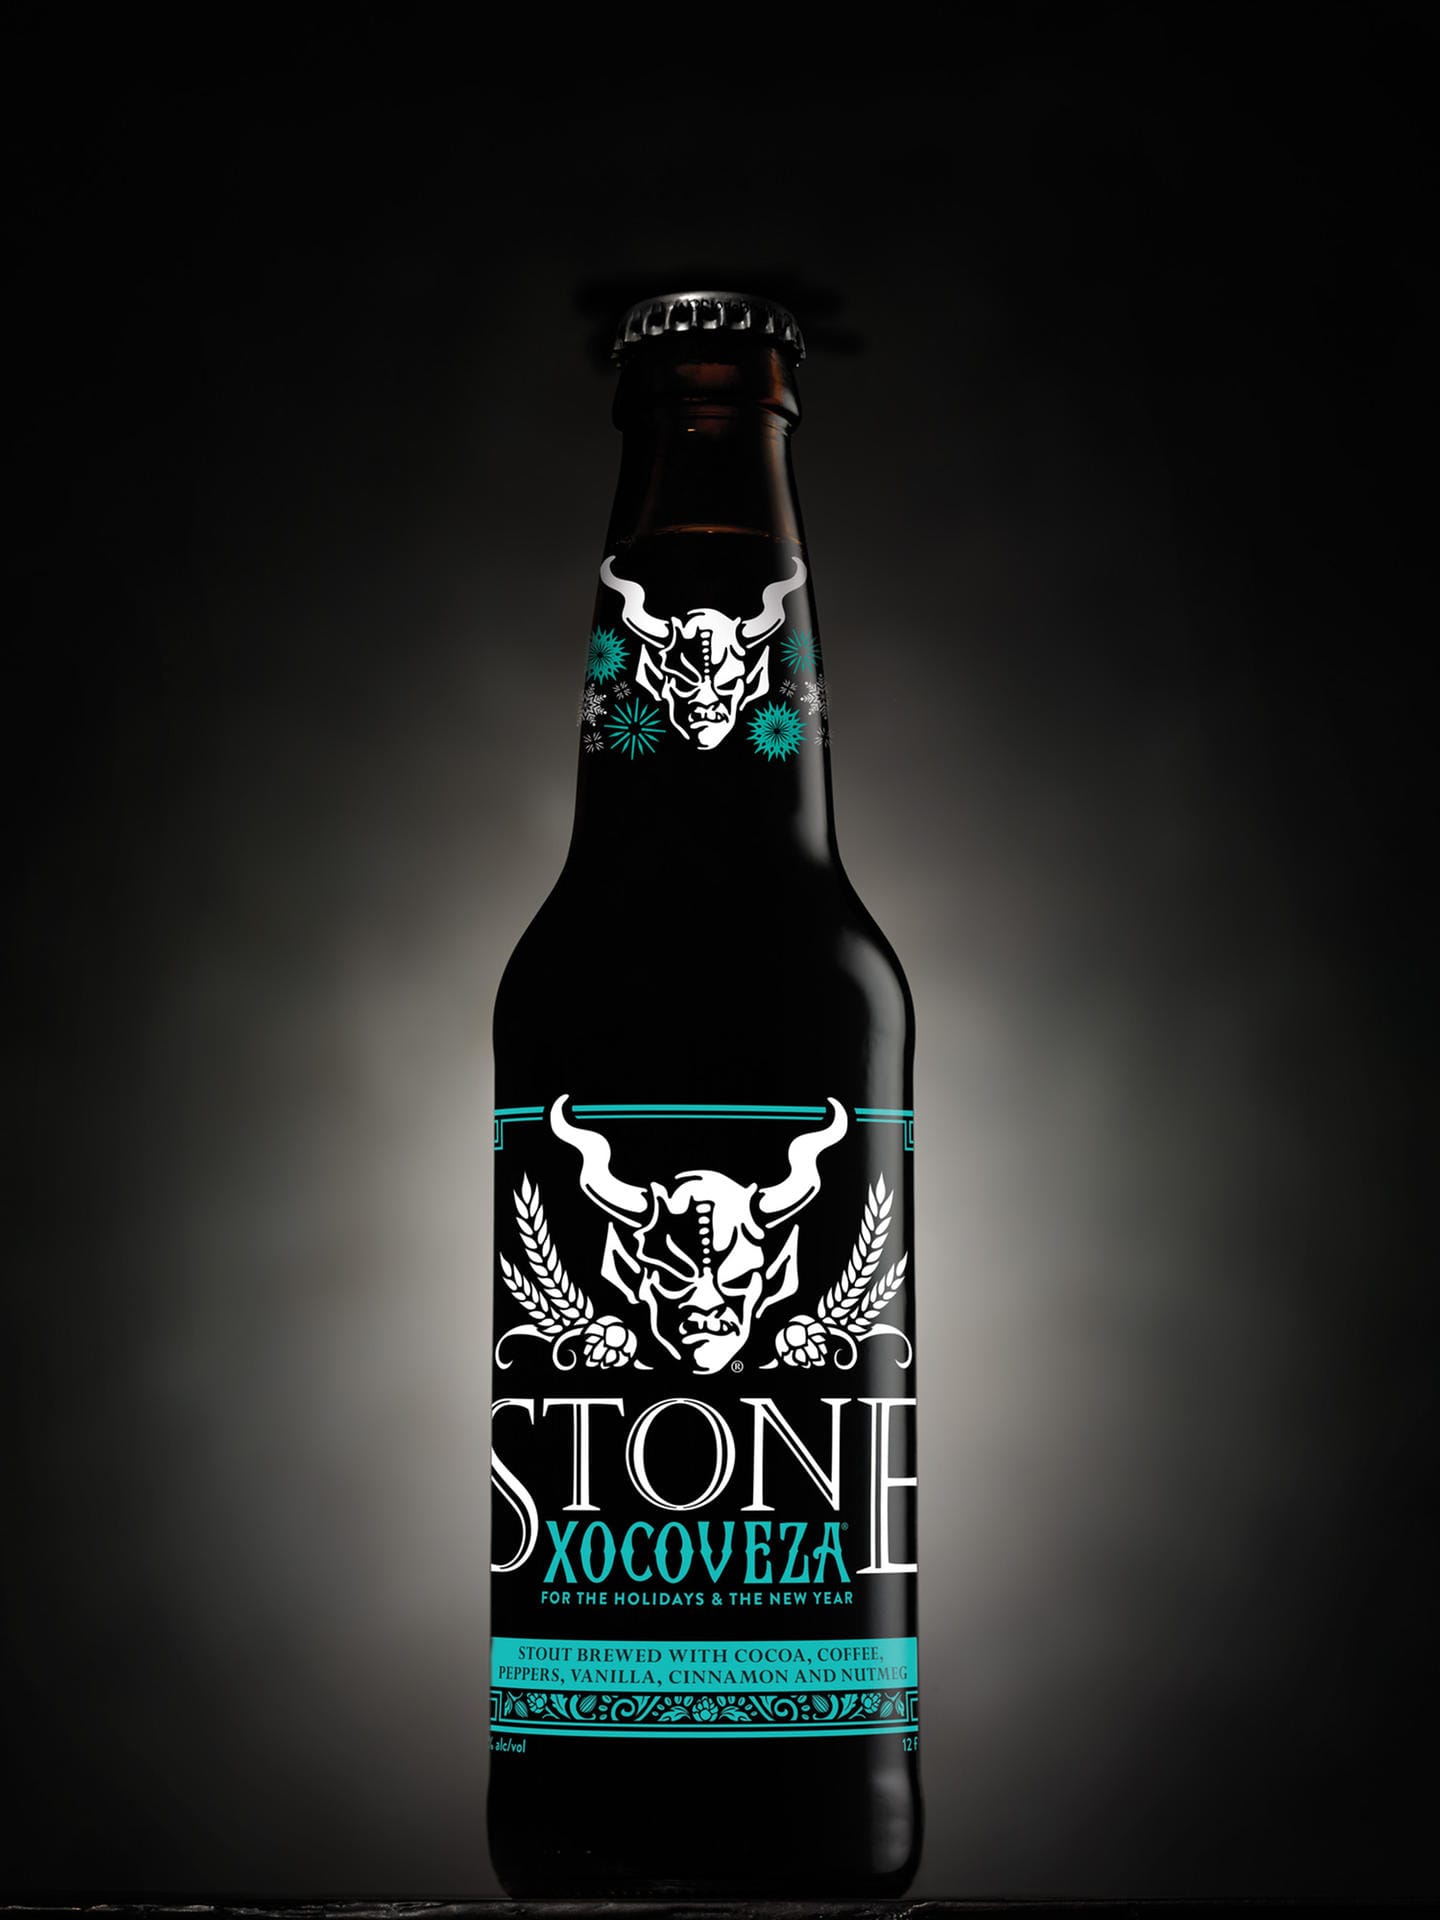 Die Stone Brewing Company wurde 1996 gegründet und gilt als weltweiter Craft Beer-Pionier. Mittlerweile ist sie die neuntgrößte Brauerei der USA. In Berlin hat sie kürzlich mit Millioneninvestition ein eigenes Brauhaus eröffnet.